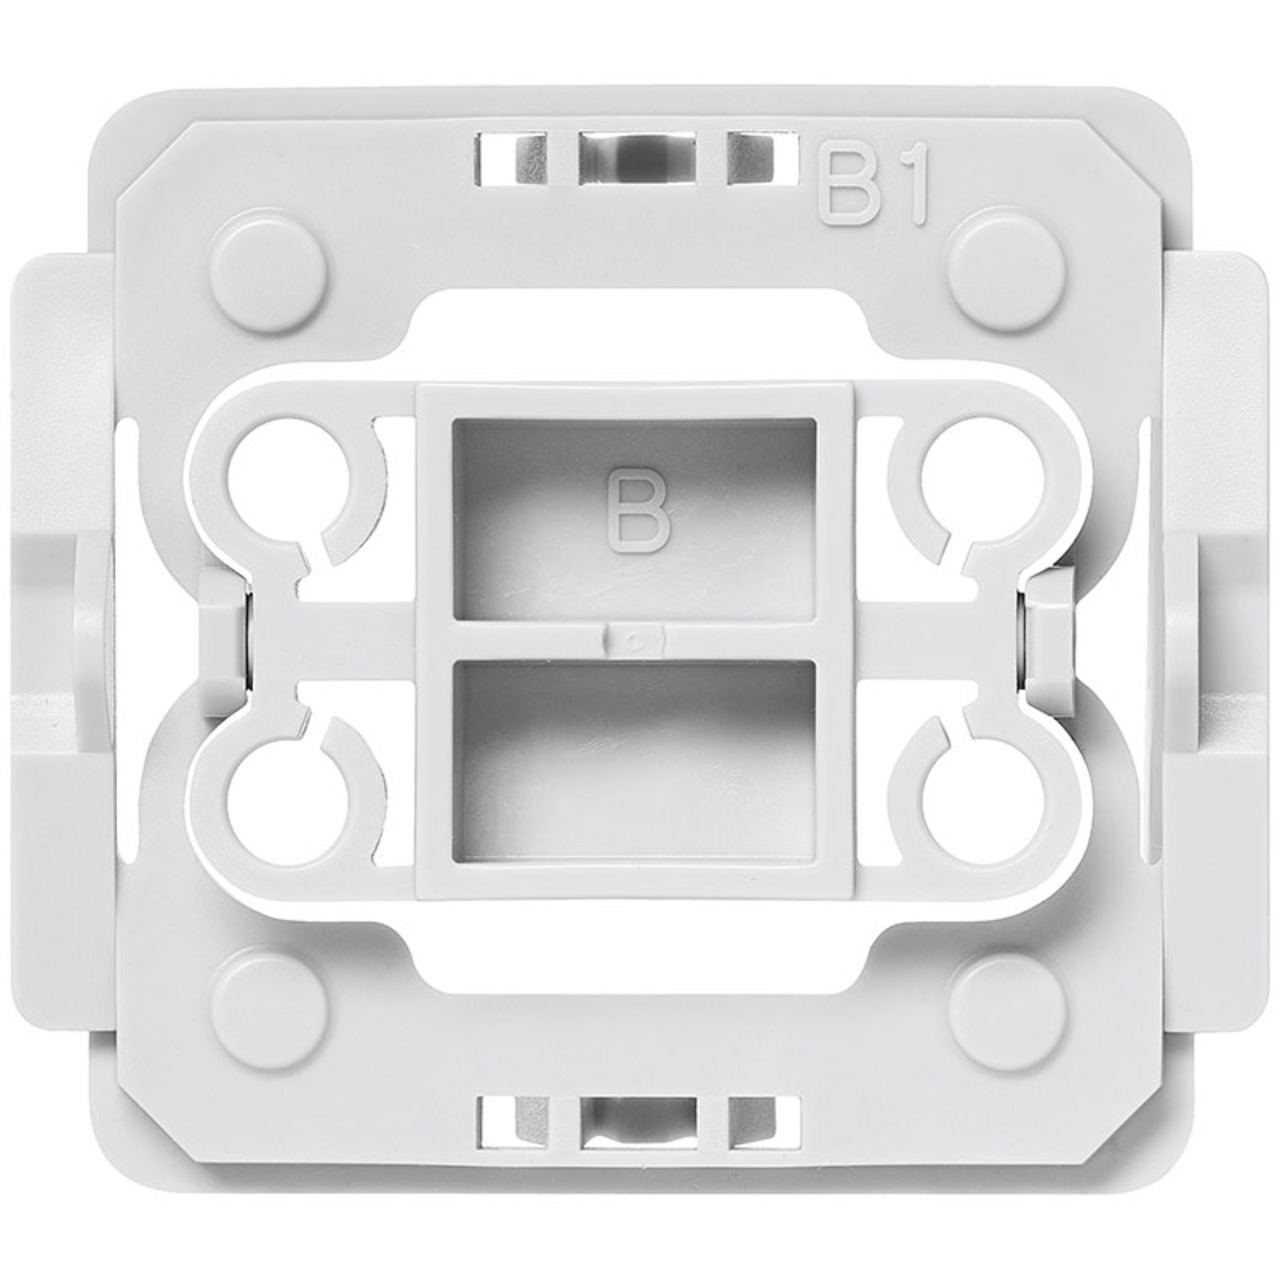 Installationsadapter für Berker-Schalter- B1- 1 Stück- für Smart Home - Hausautomation unter Hausautomation